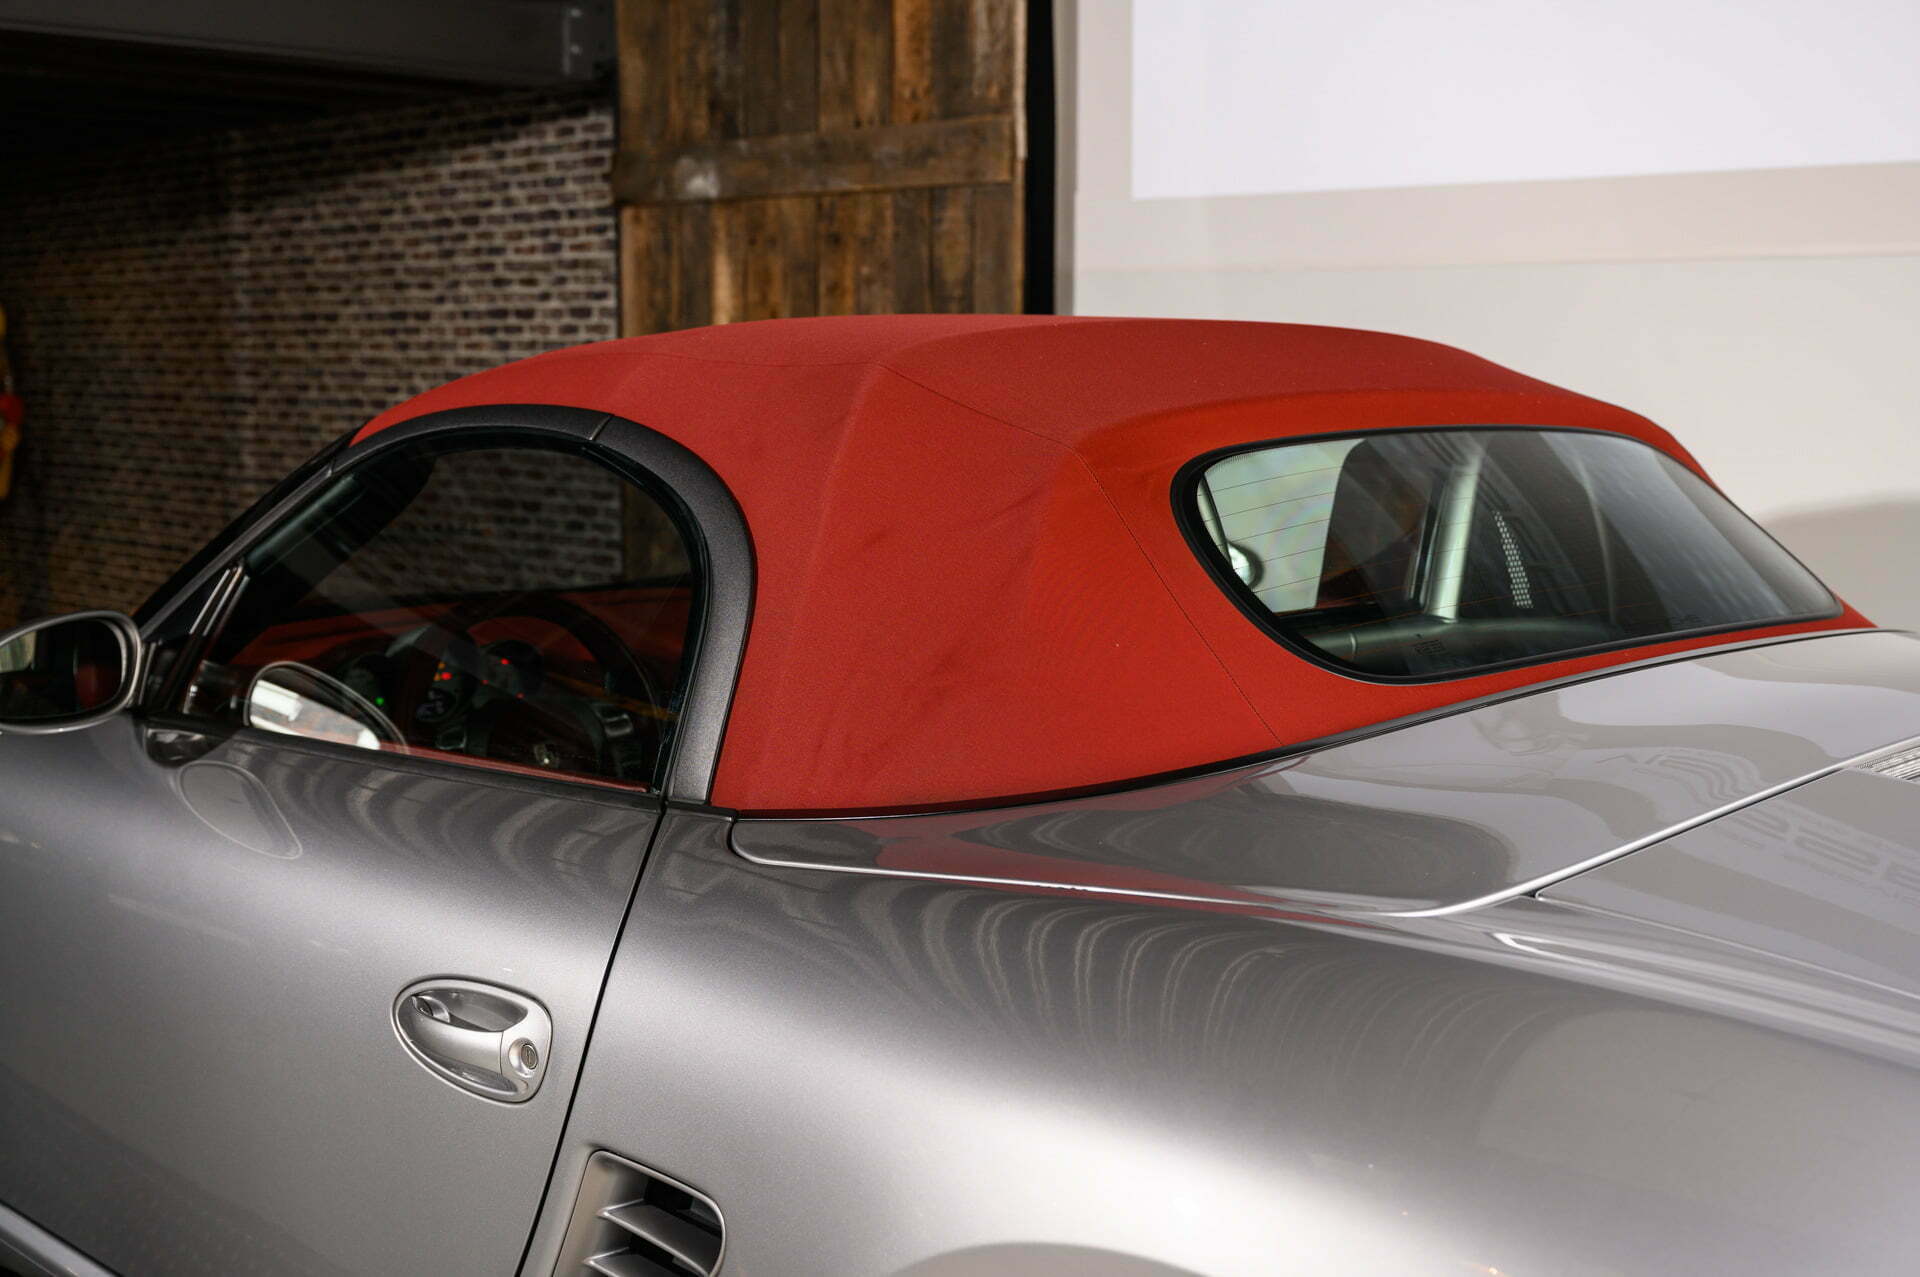 Porsche Boxster RS 60 Spyder automaat GT-silber metallic Car Service Visser Gespecialiseerd in Porsche Hilversum